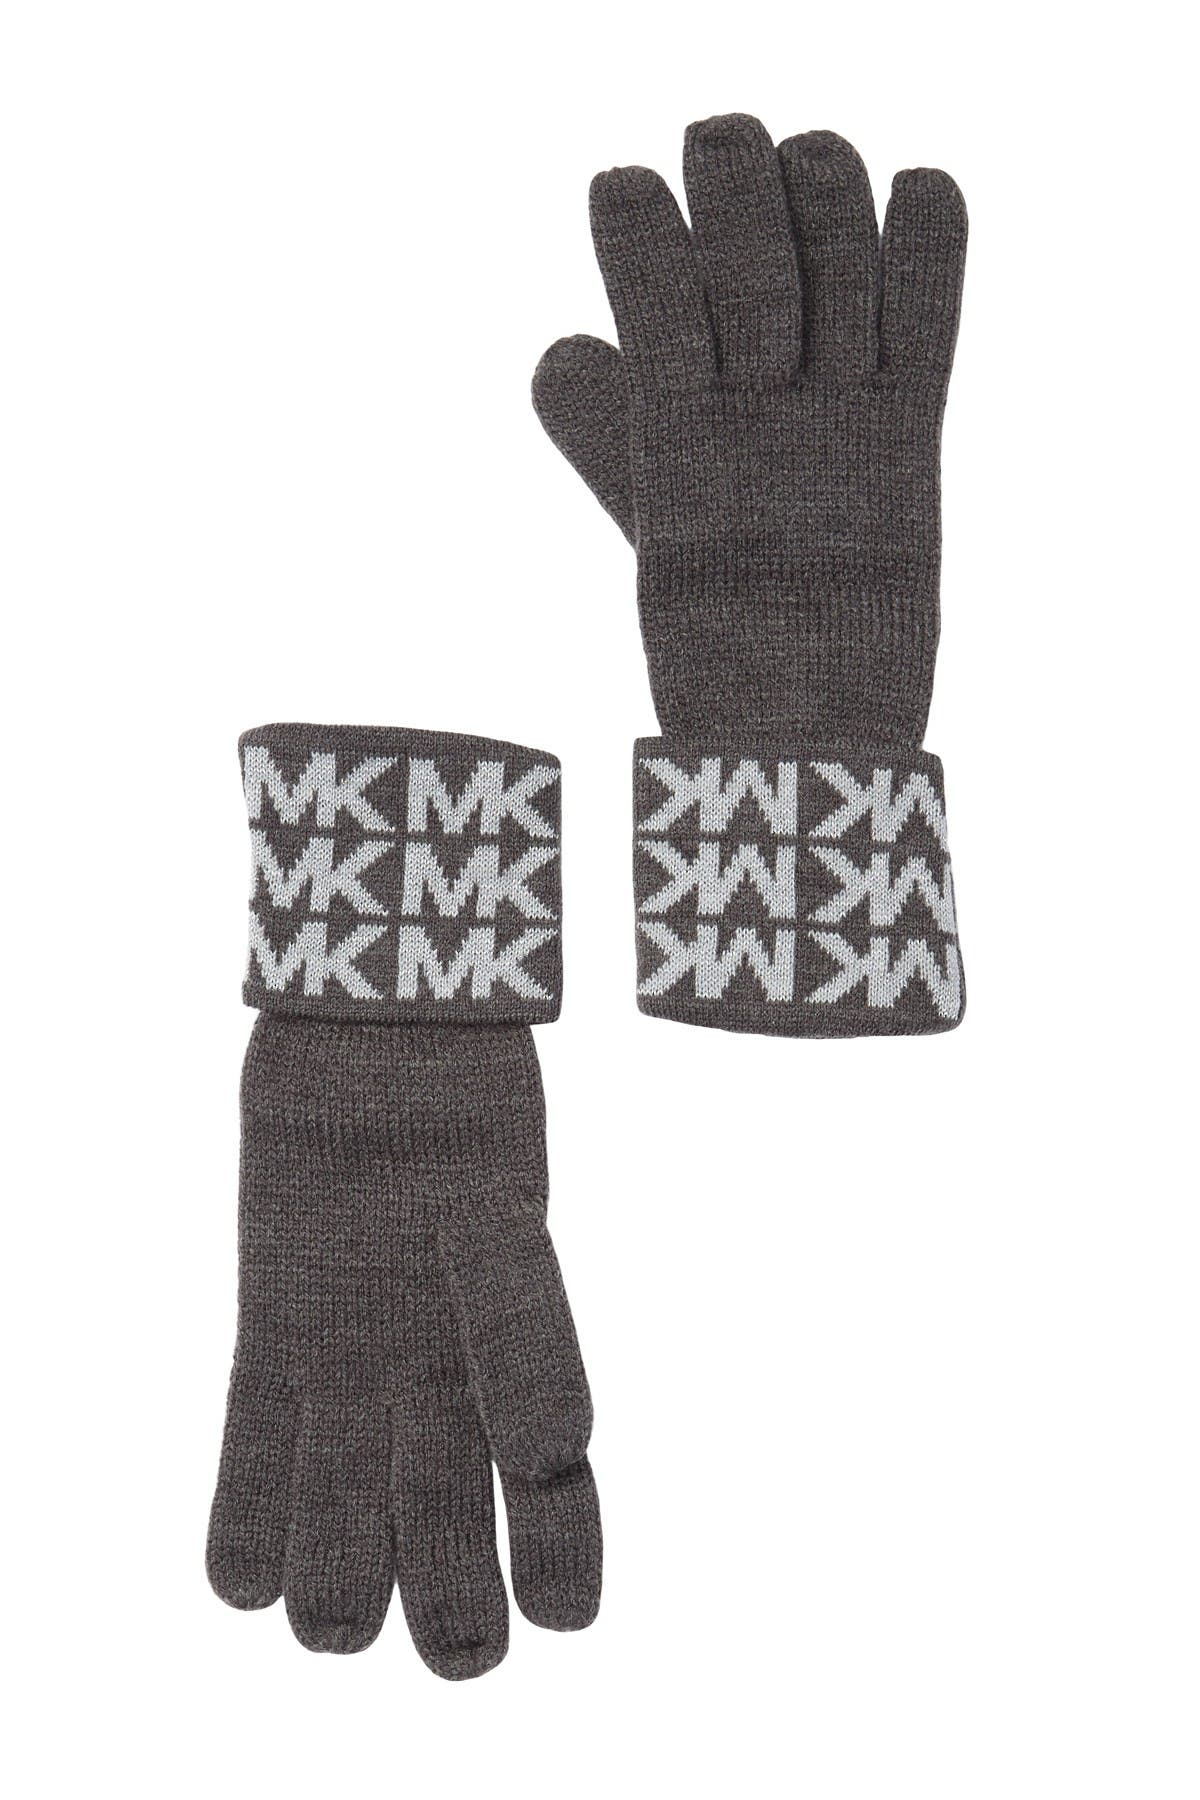 Michael Kors | Logo Knit Gloves 